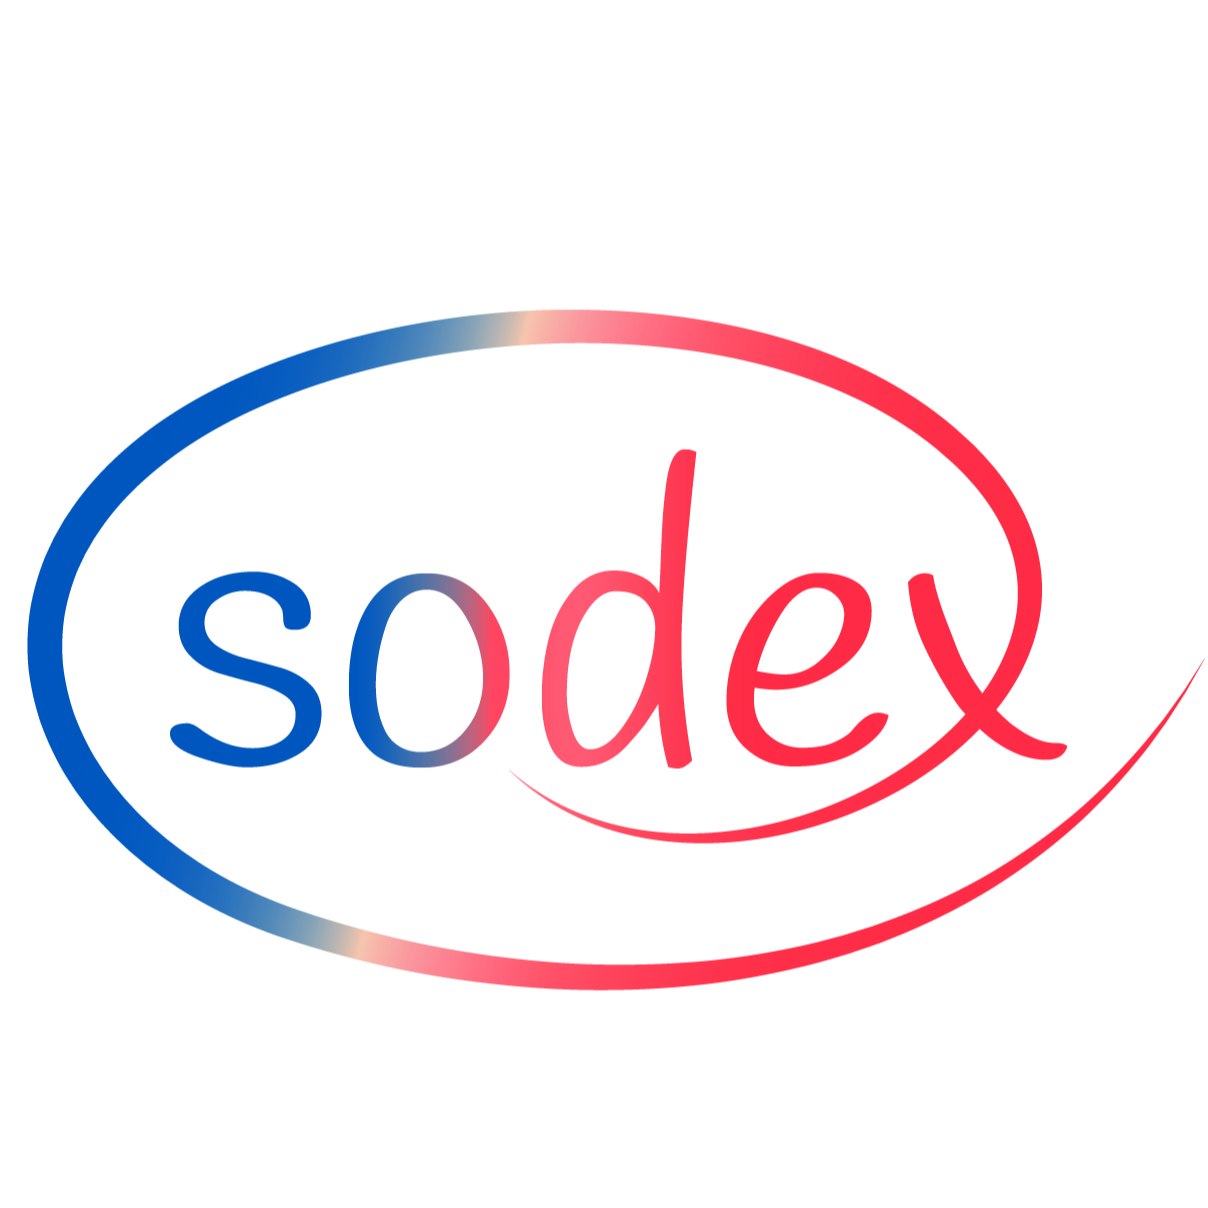 SODEX INDUSTRIE ENERGIE